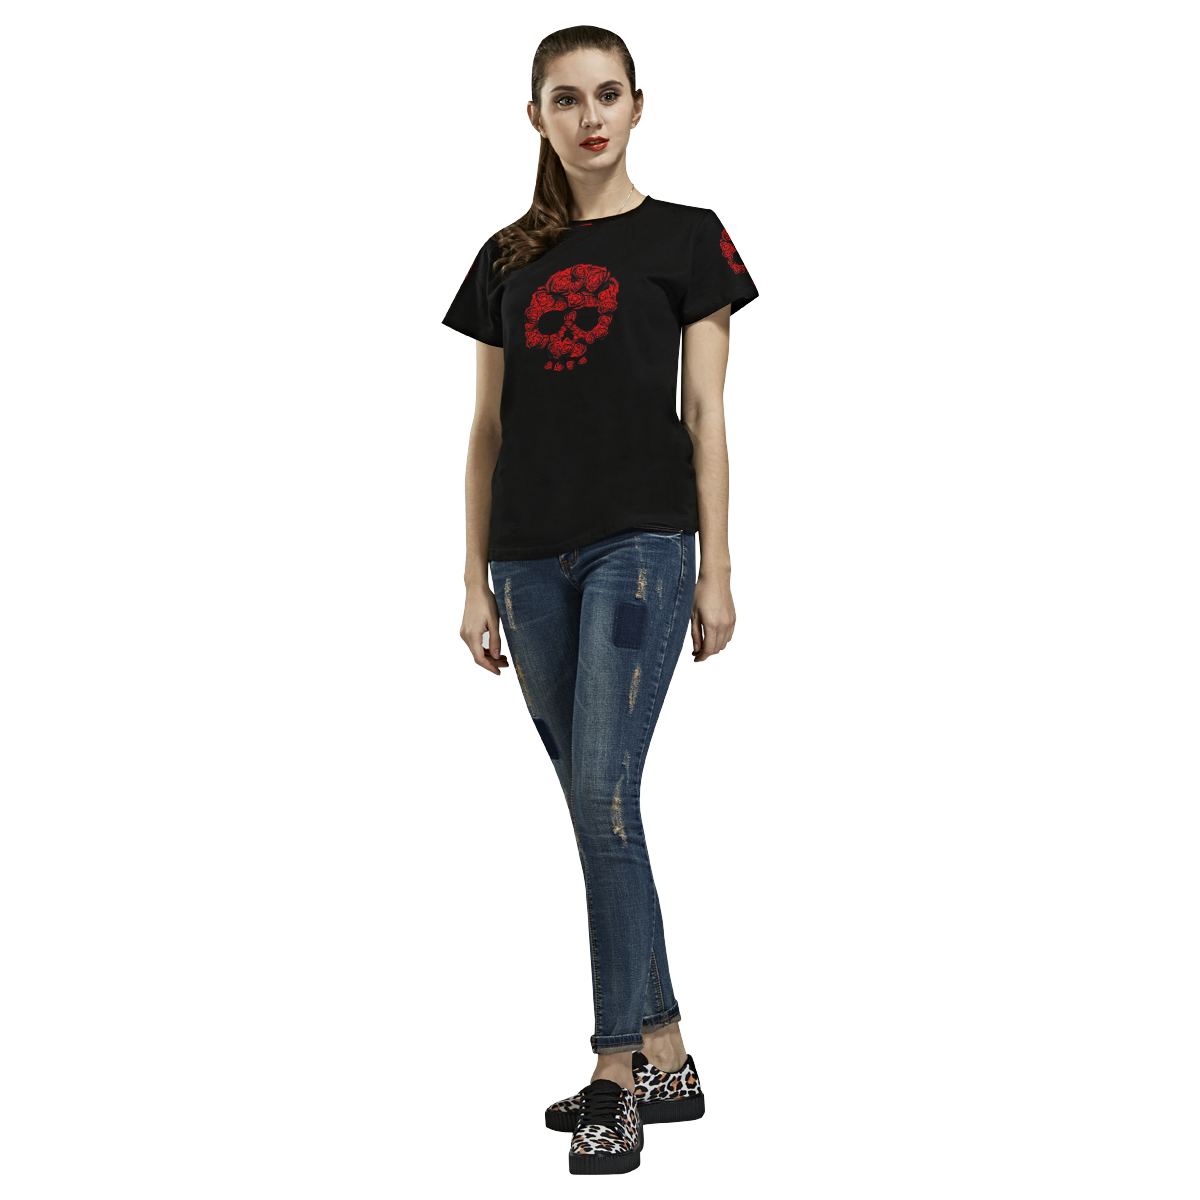 Rose Skull All Over Print T-Shirt for Women (USA Size) (Model T40)